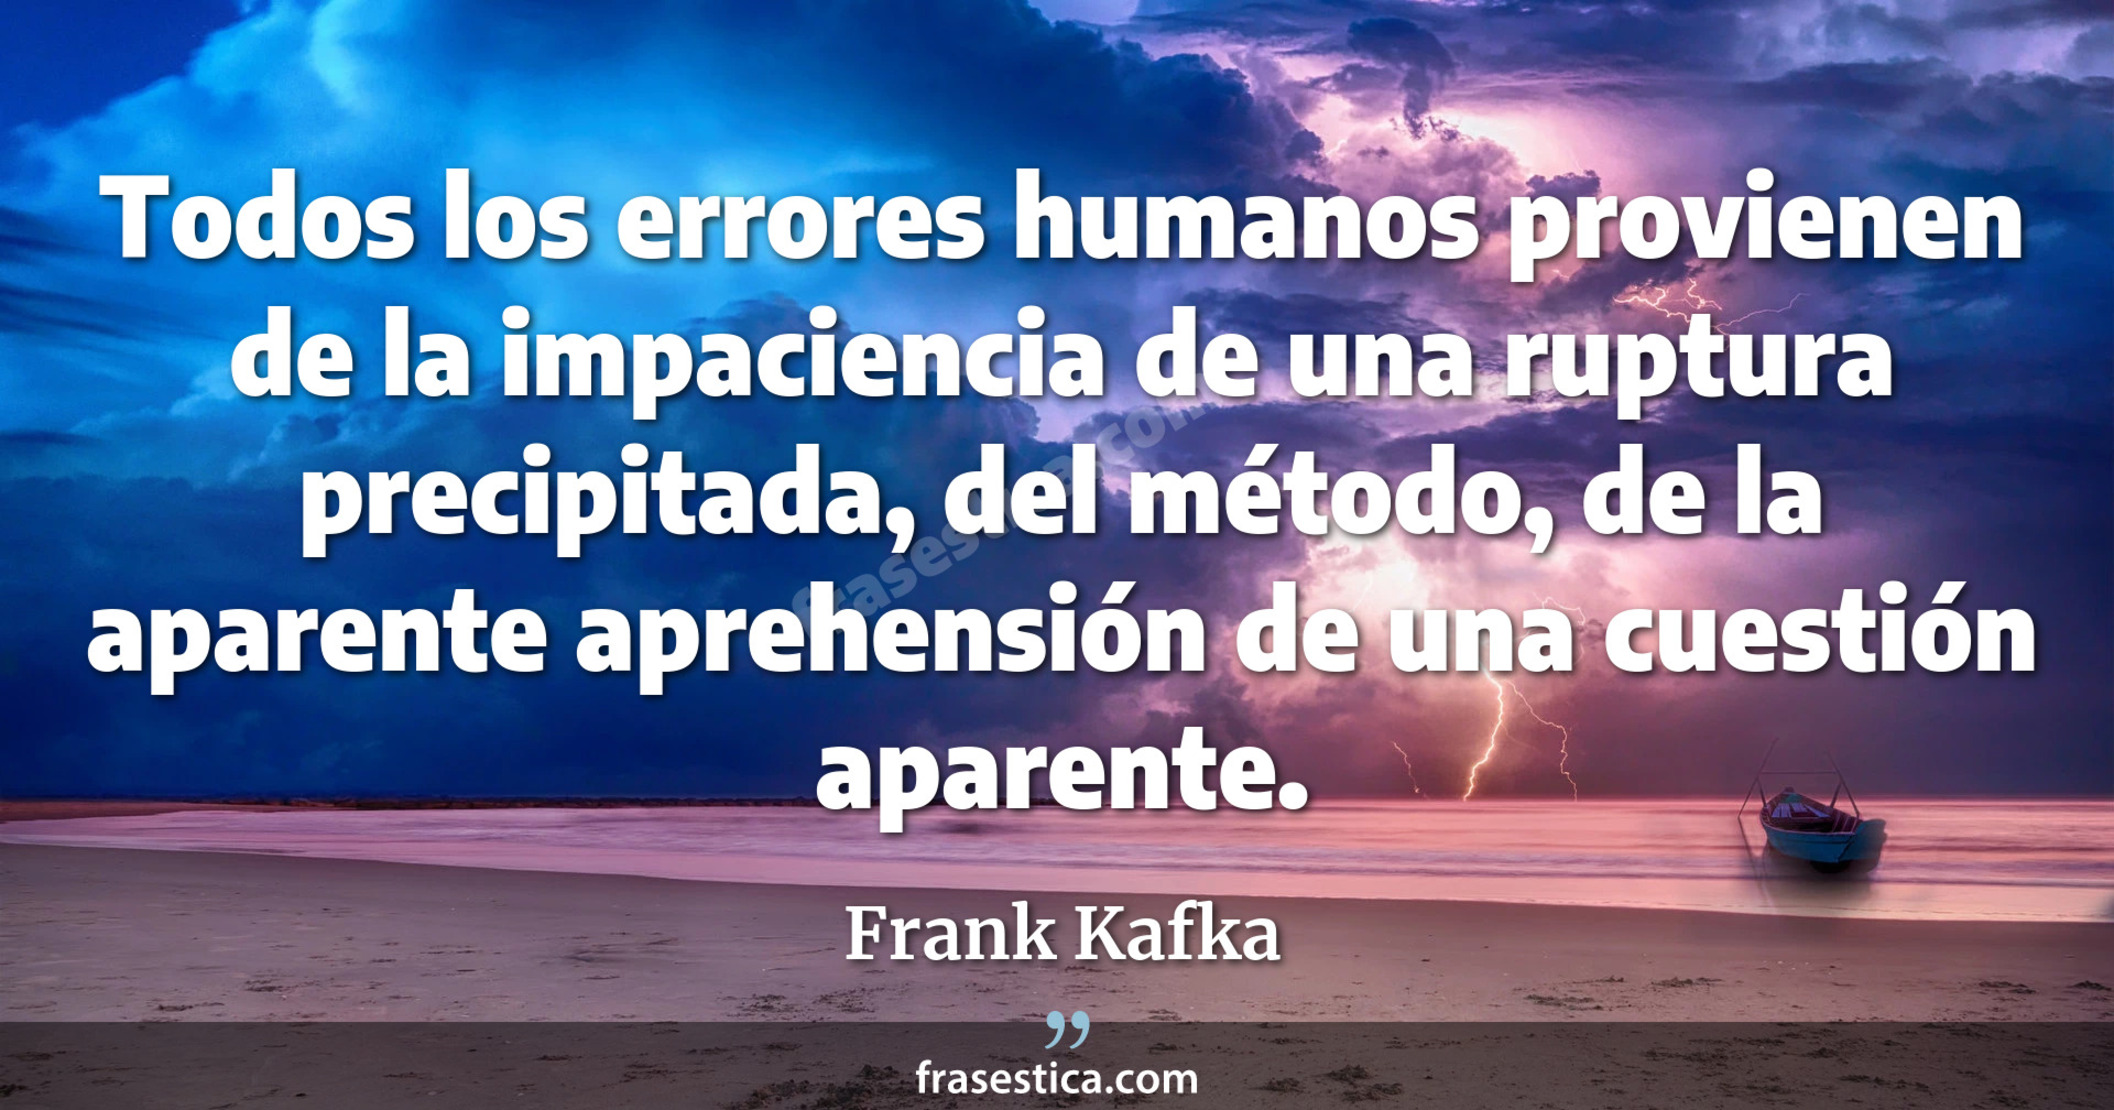 Todos los errores humanos provienen de la impaciencia de una ruptura precipitada, del método, de la aparente aprehensión de una cuestión aparente. - Frank Kafka